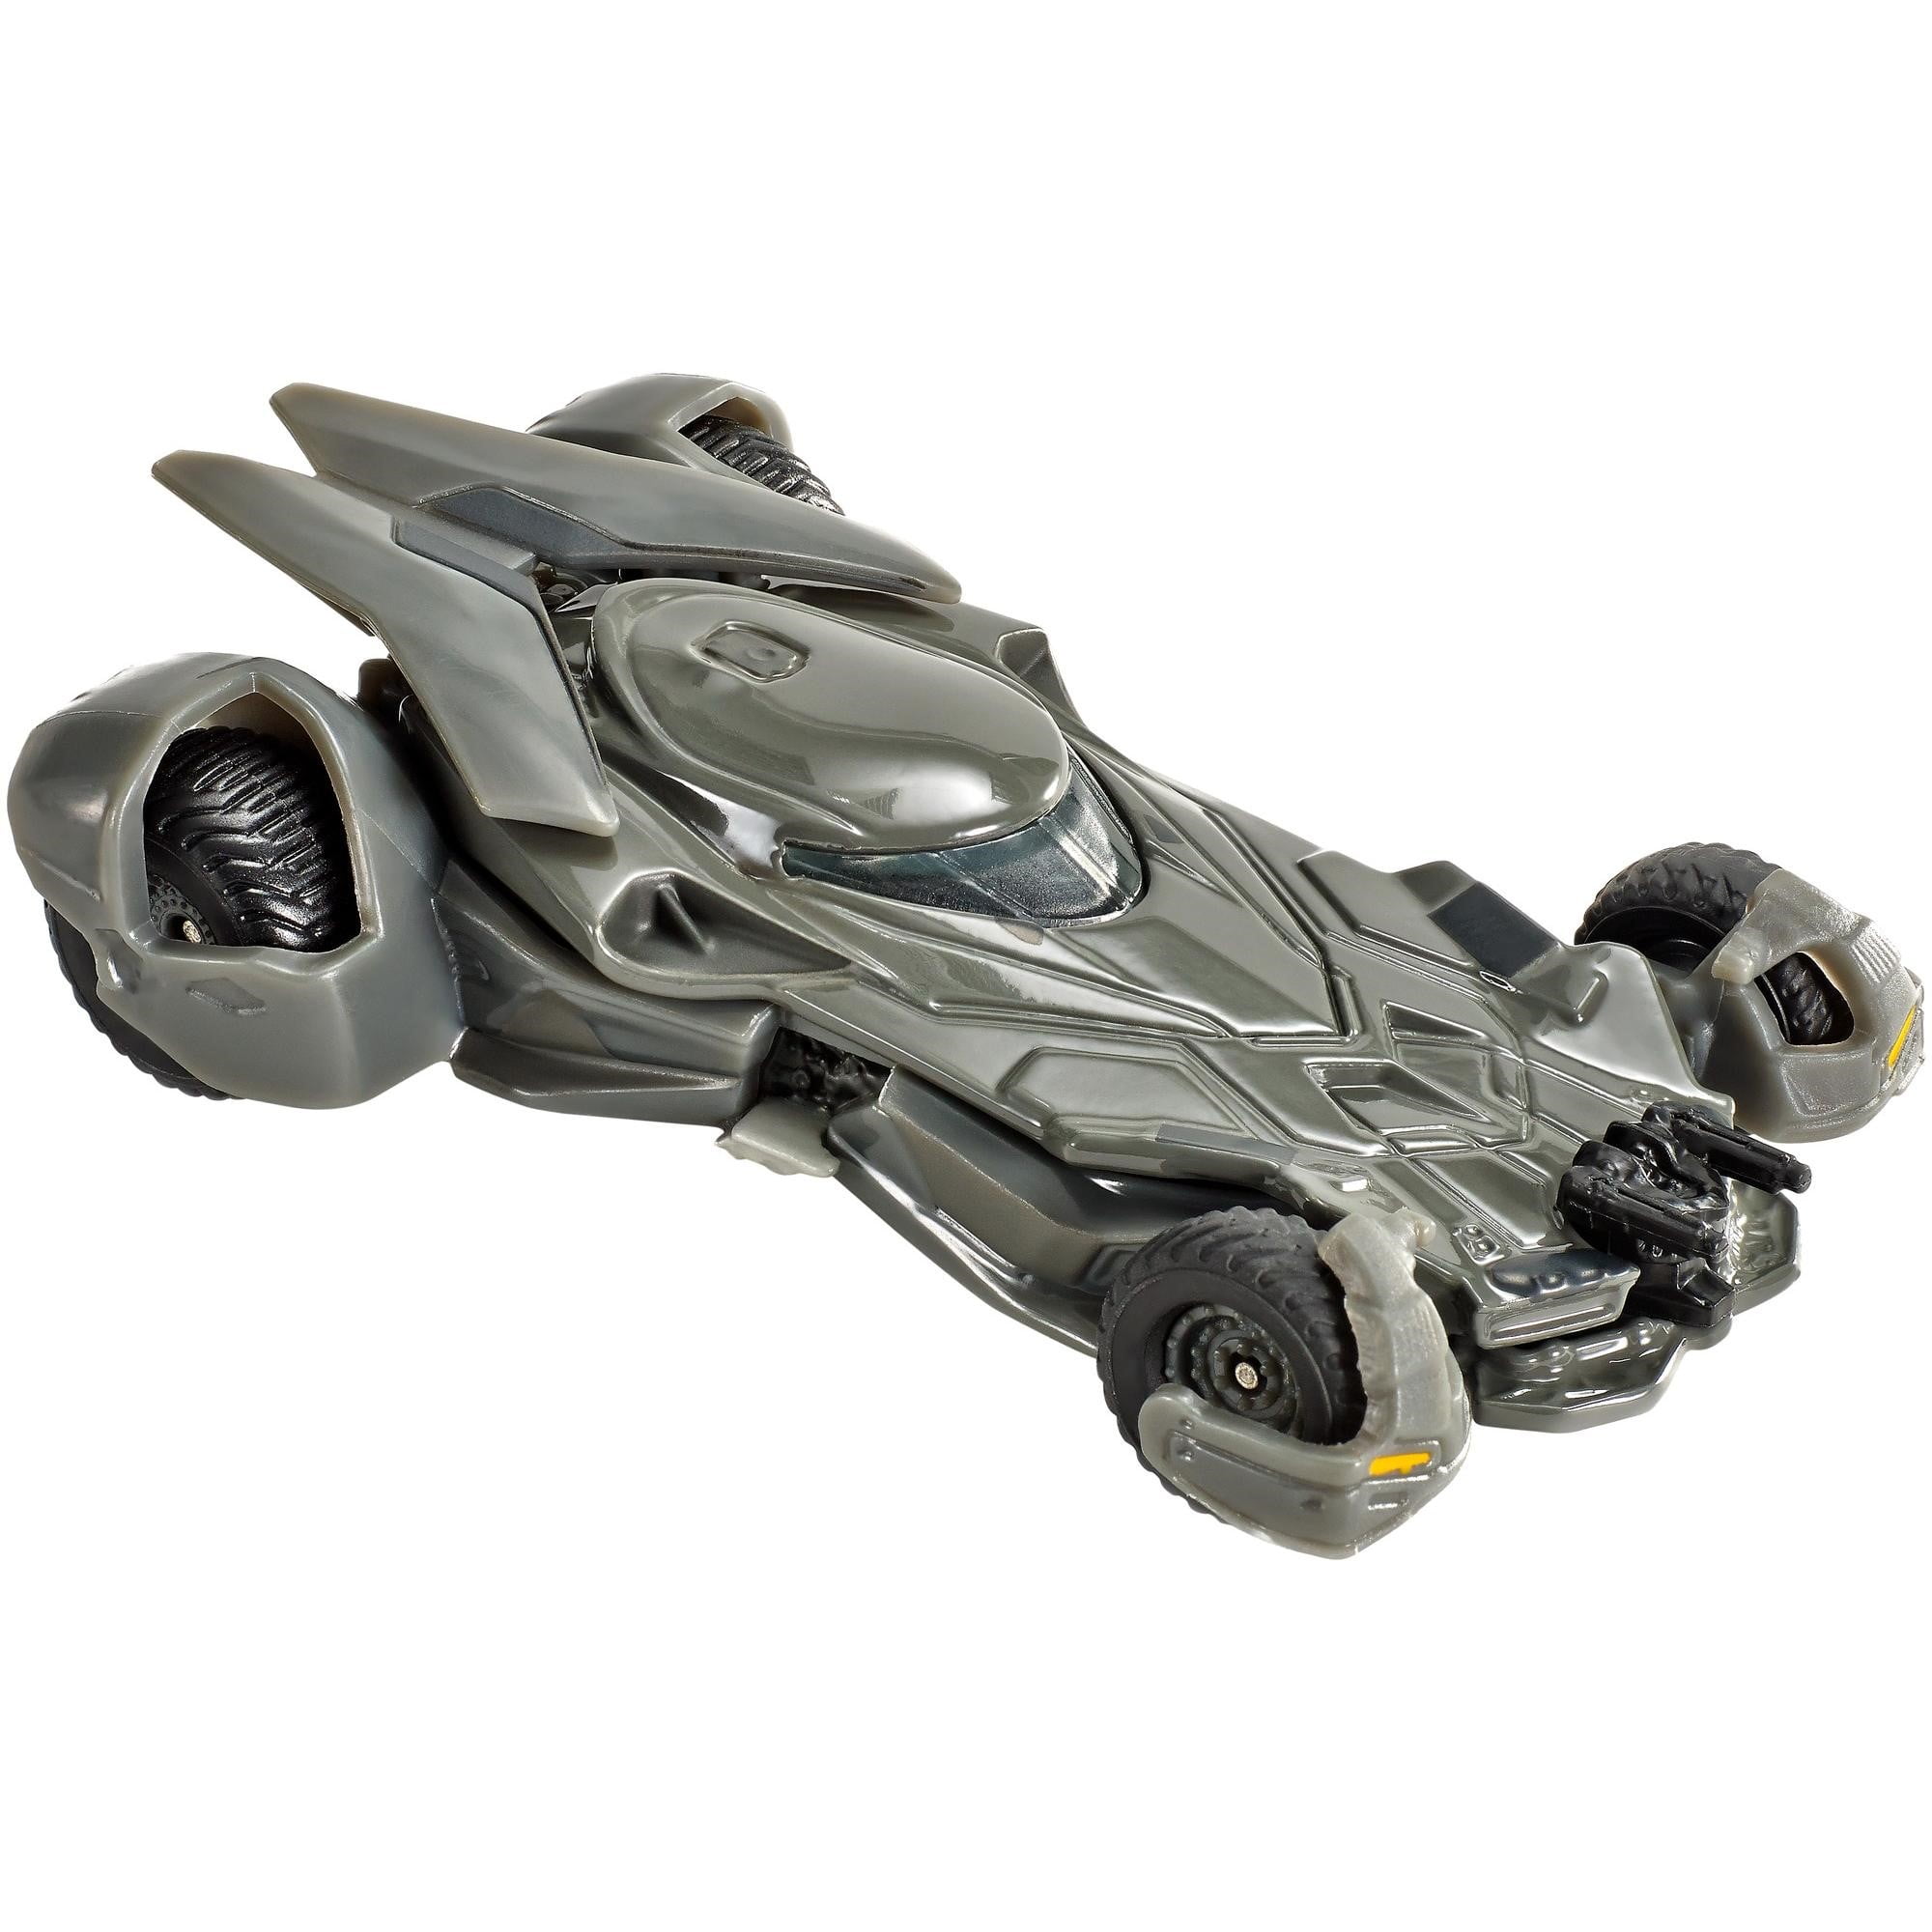 2018 Hot Wheels DC Justice League Batman Batmobile Toy Car for sale online 